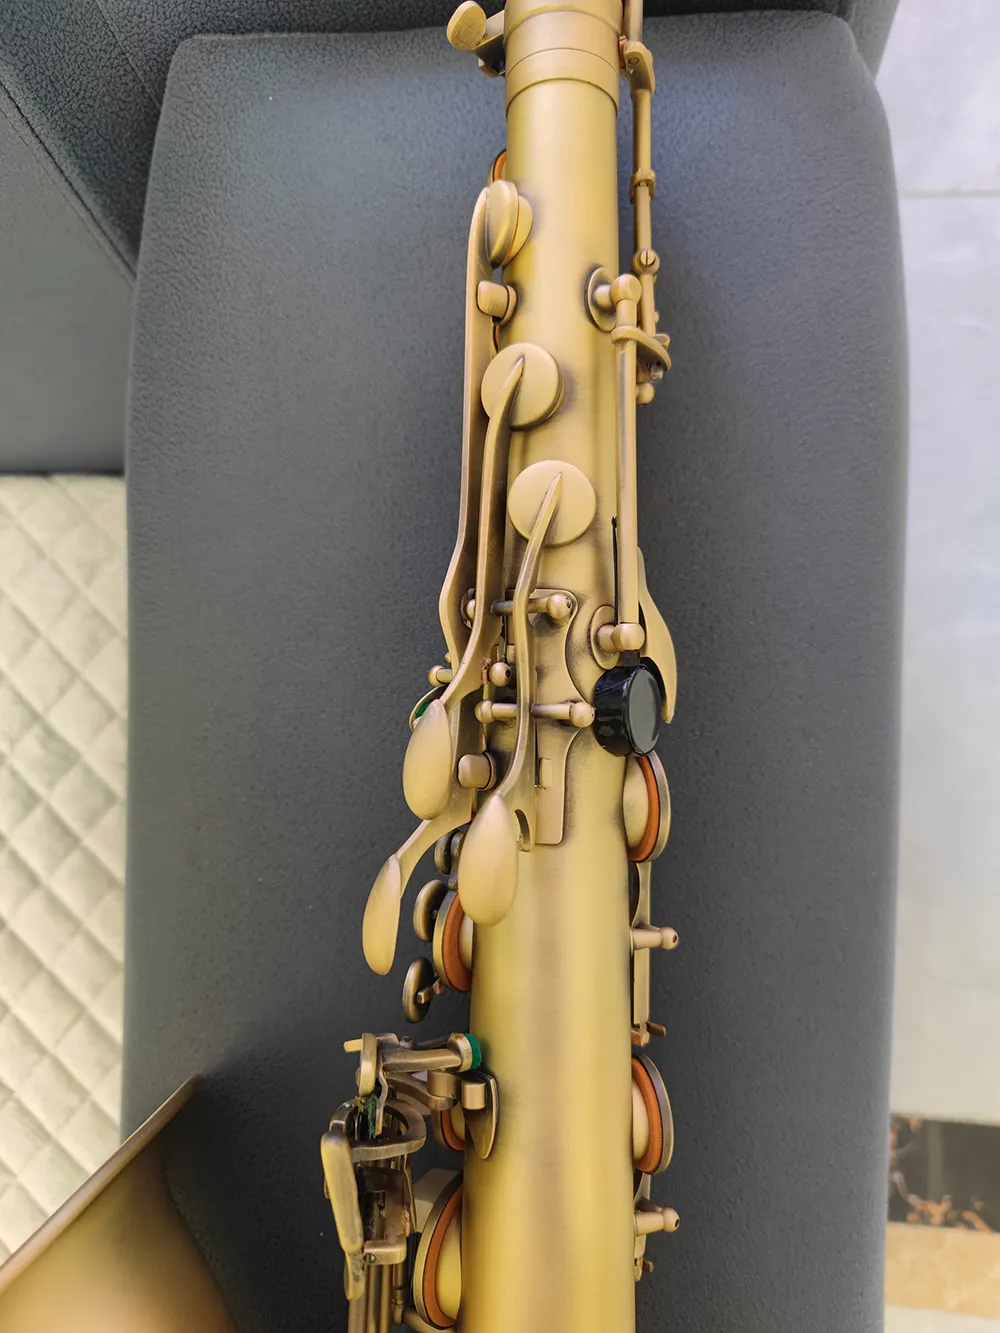 Матовый оригинальный 54, модель один в один, модель Bb, профессиональный тенор-саксофон, ретро, старинная медь, тенор-саксофон, джазовый инструмент2102555